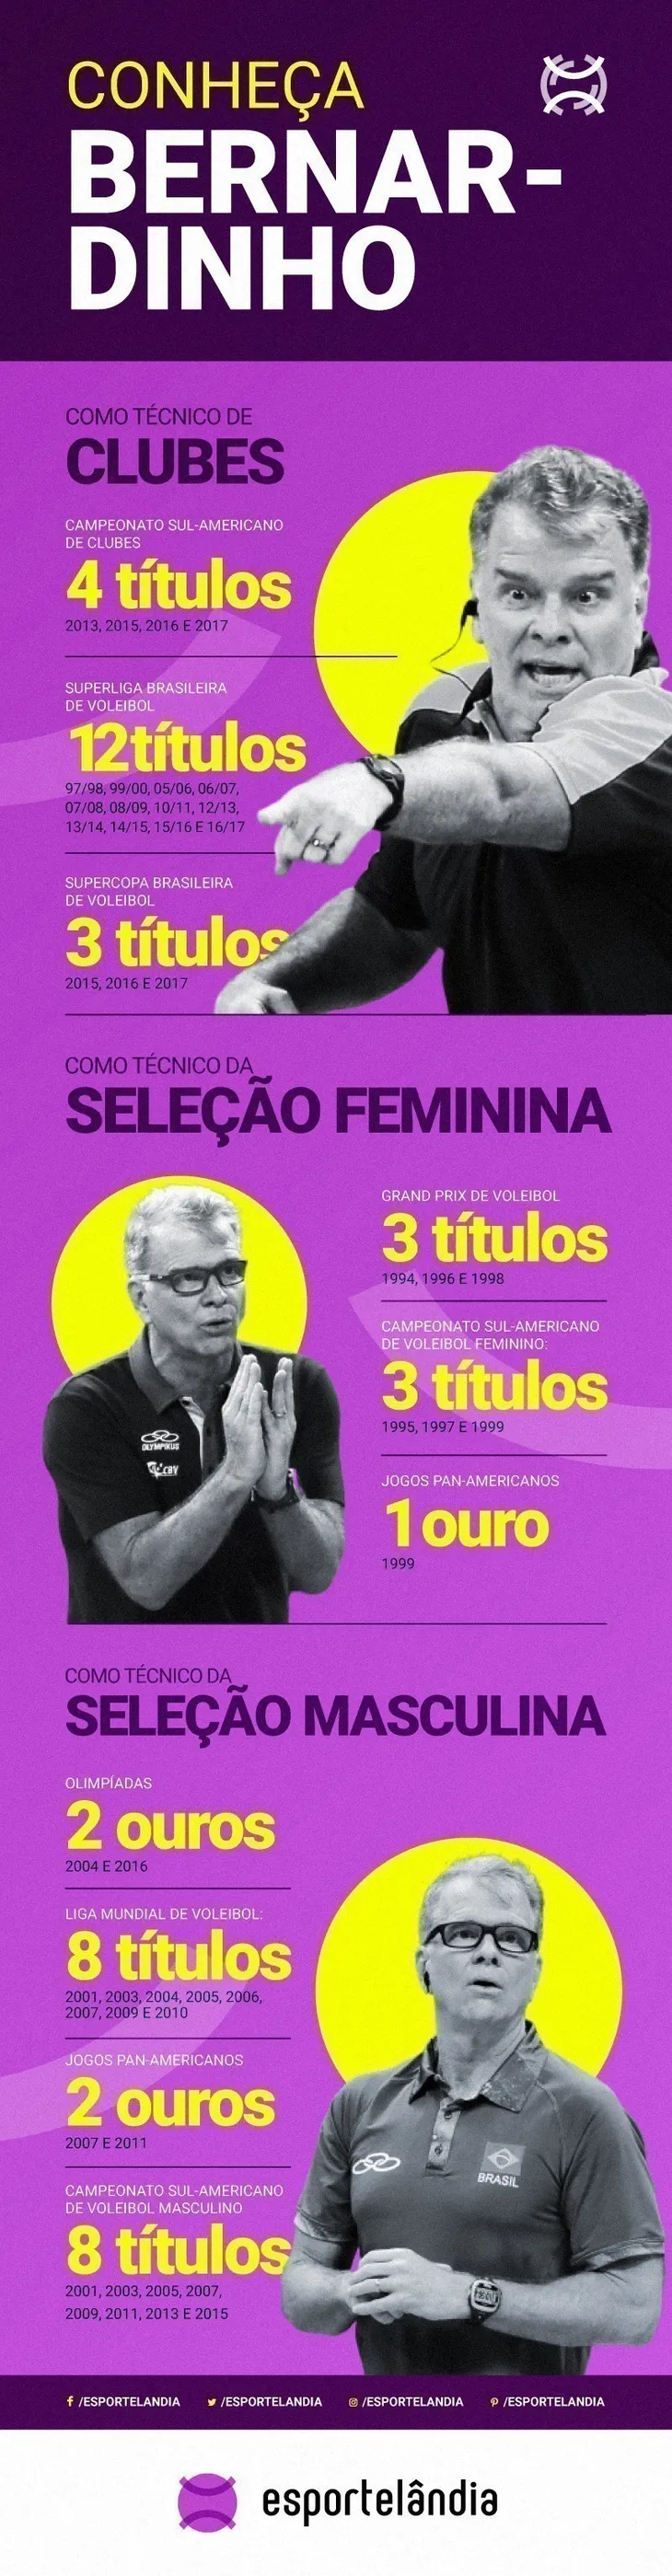 10674 83516 - Frases Bernardinho